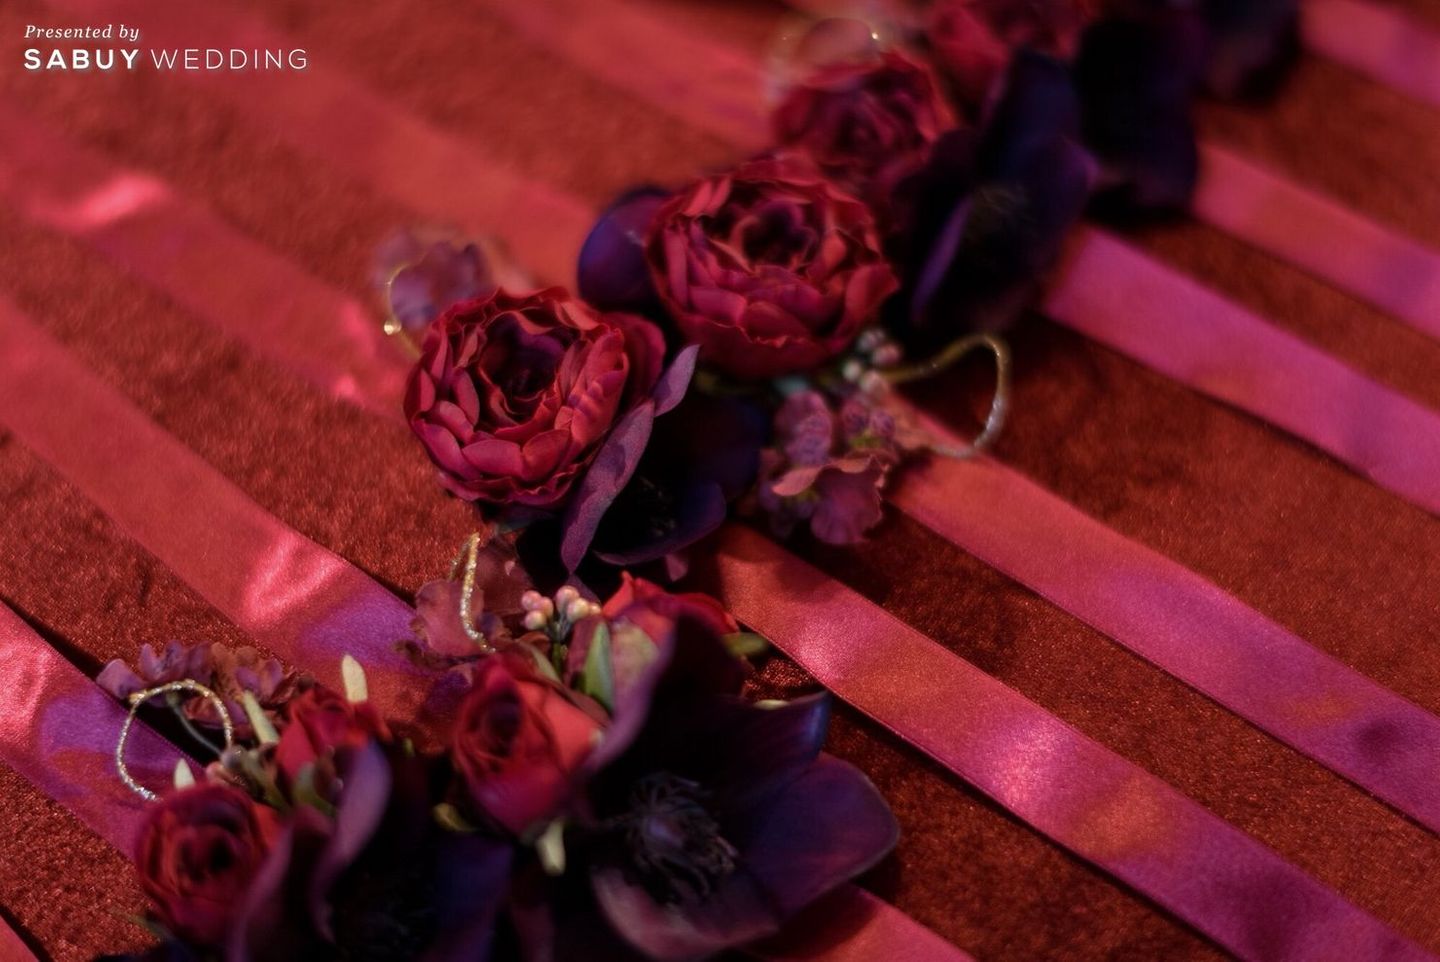 พร็อพ,ดอกไม้ผูกข้อมือเพื่อนเจ้าสาว รีวิวงานแต่งสีแดง สวยแพงสุดชิค ลุคจีนโมเดิร์น @Conrad Bangkok